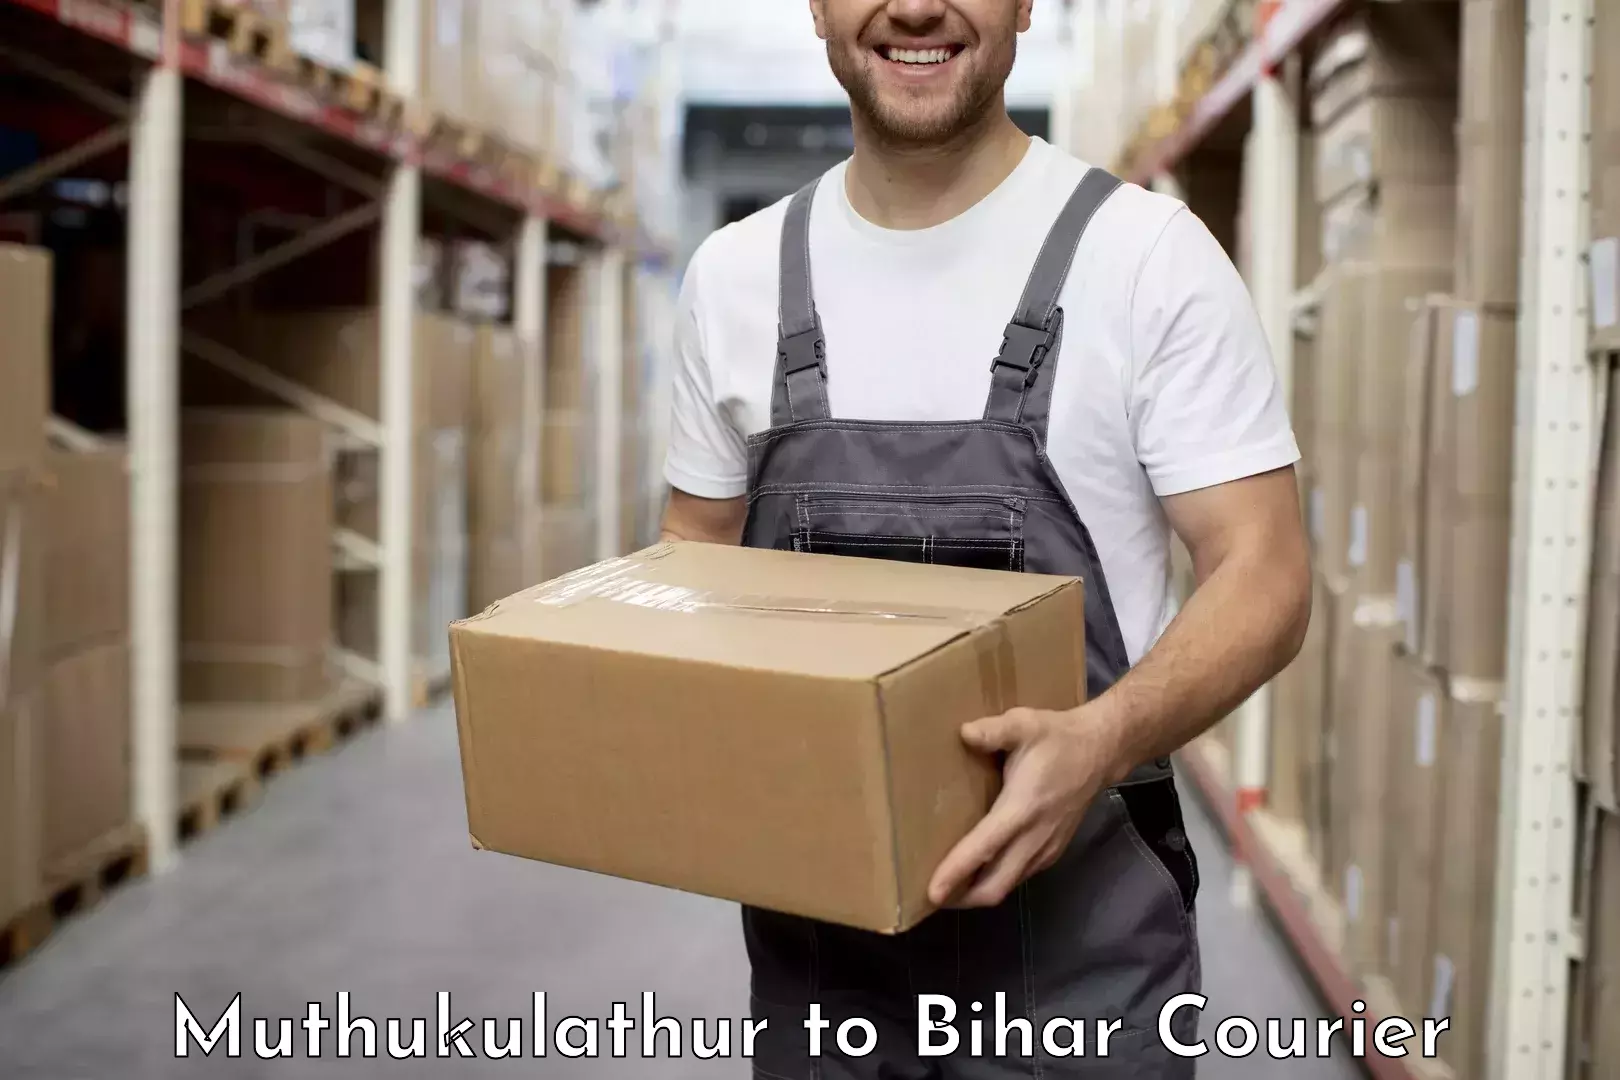 Customer-focused courier Muthukulathur to Bhabua